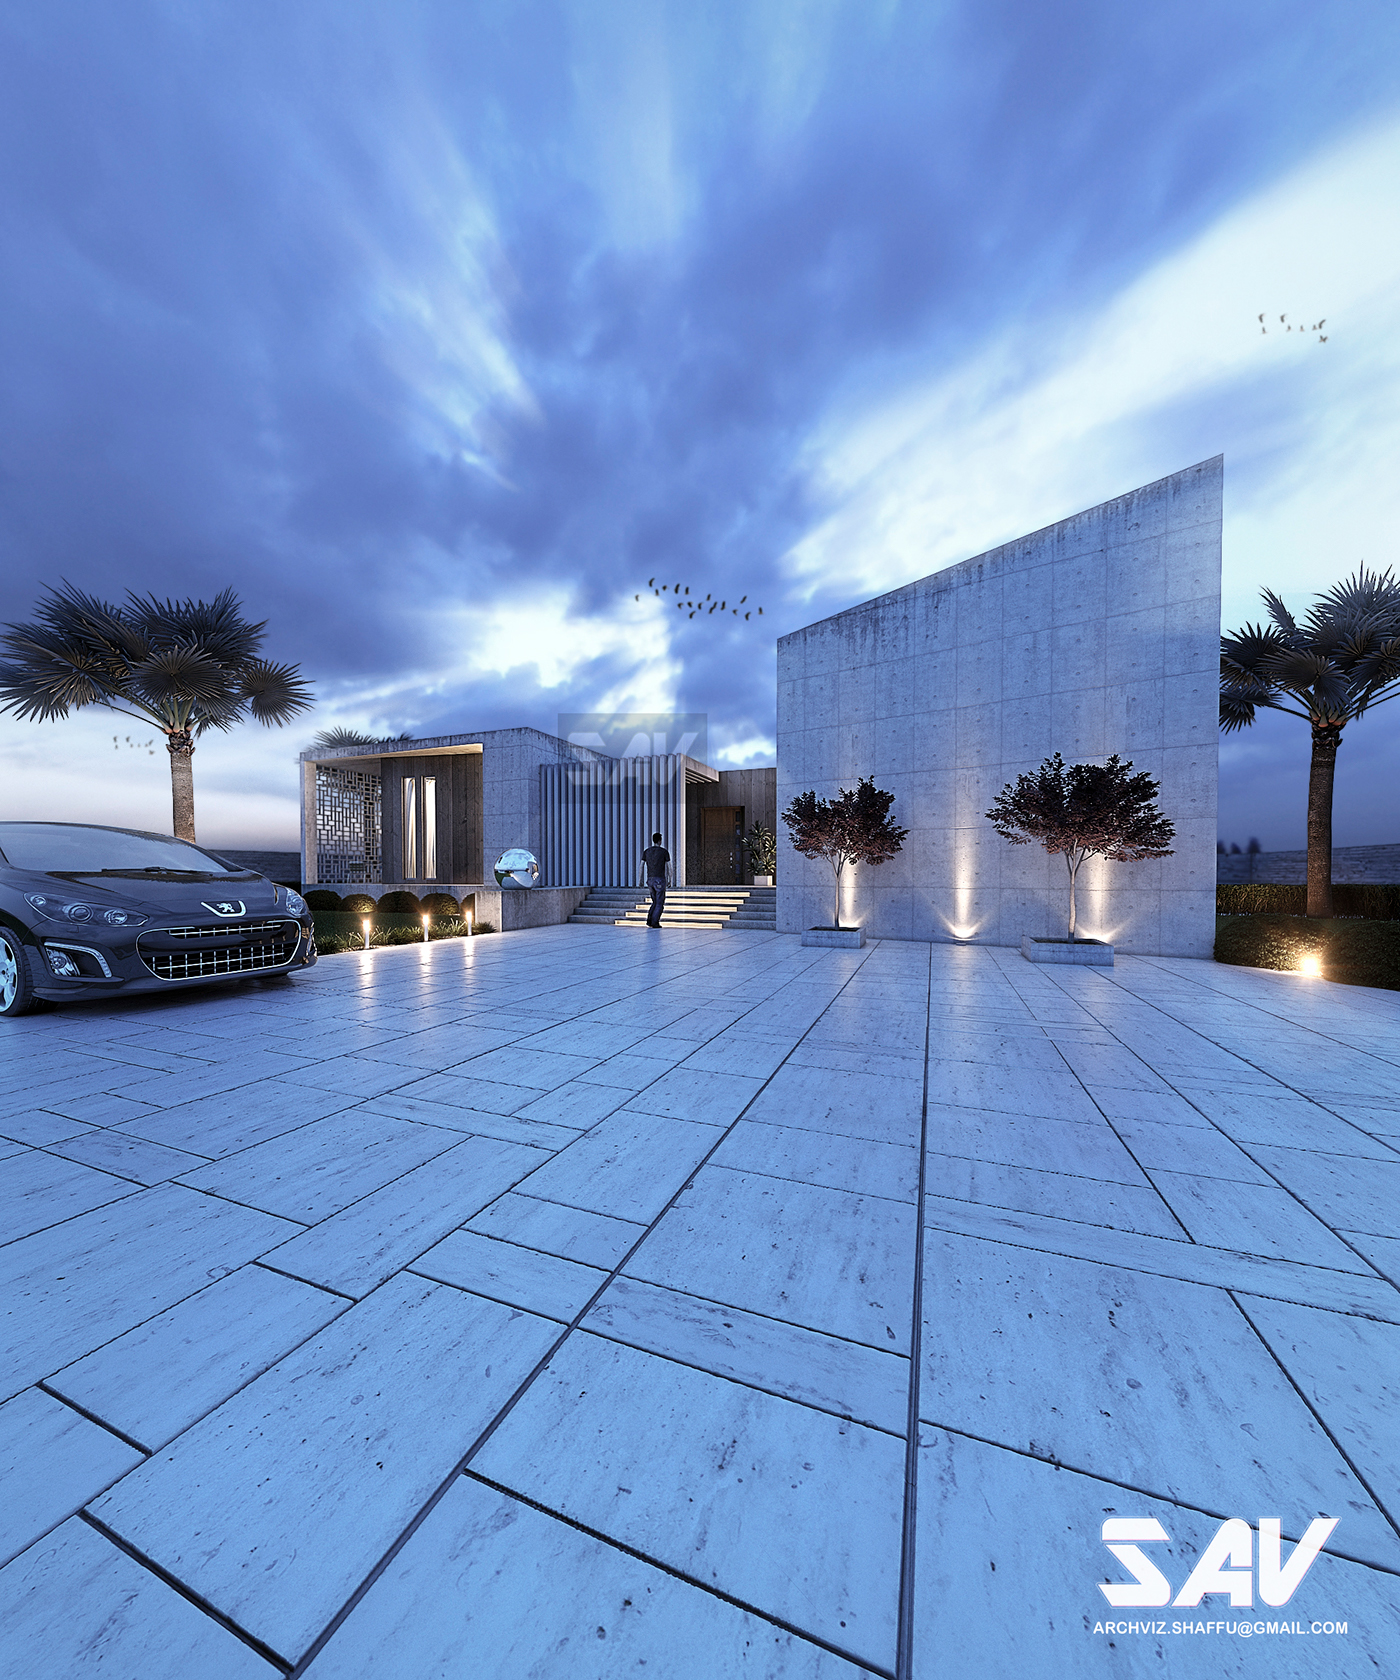 architectur exterior archvis realistic render facade dusk view Concrete House 3ds max realistic rendering shaffu archviz